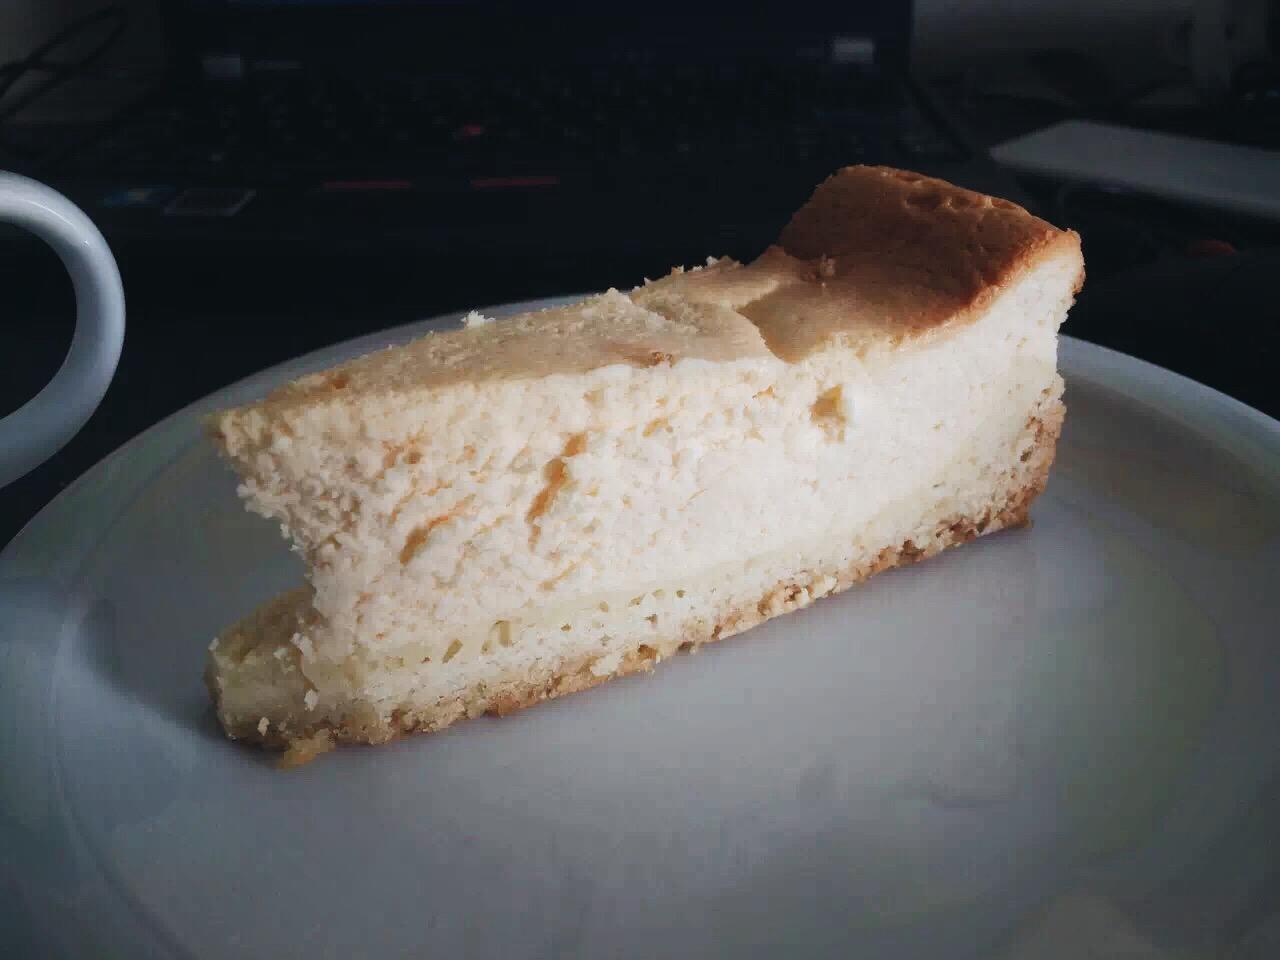 【烘焙搬运工】Käsekuchen 德式奶酪蛋糕(夸克蛋糕)的做法